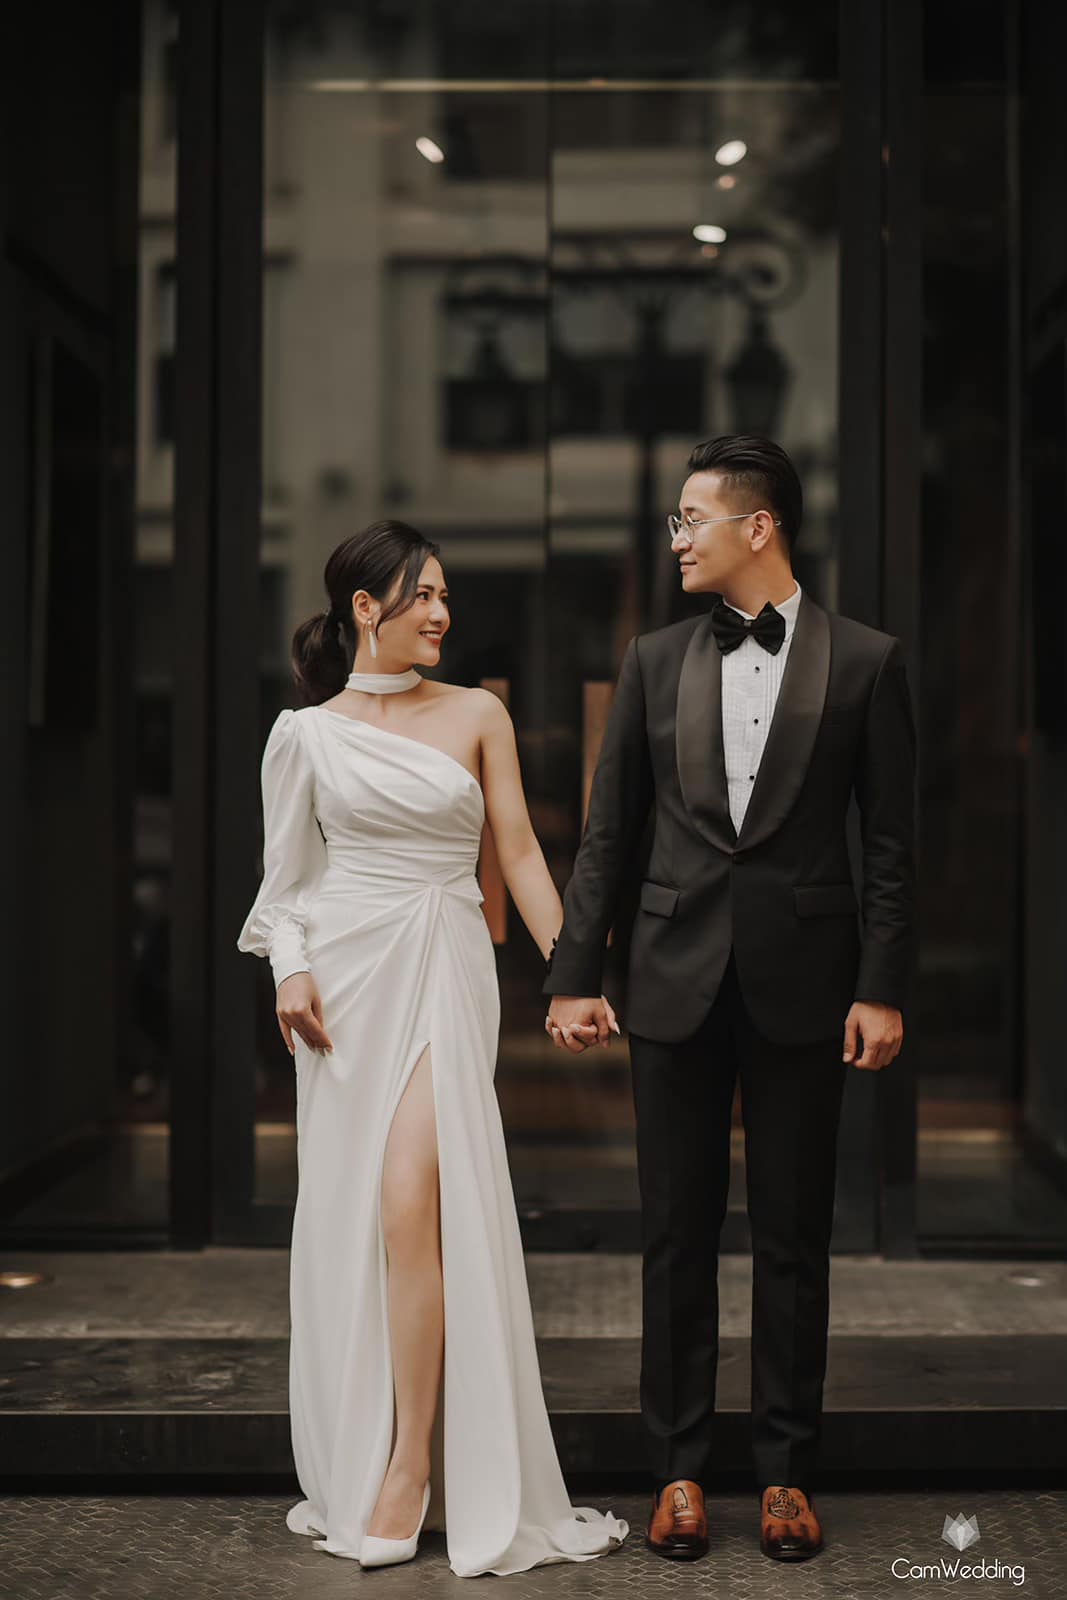 Việt Hoa 'Em gái Phương Oanh' tung bộ ảnh đẹp lung linh với bạn trai khiến netizen cứ ngỡ ảnh cưới - Ảnh 7